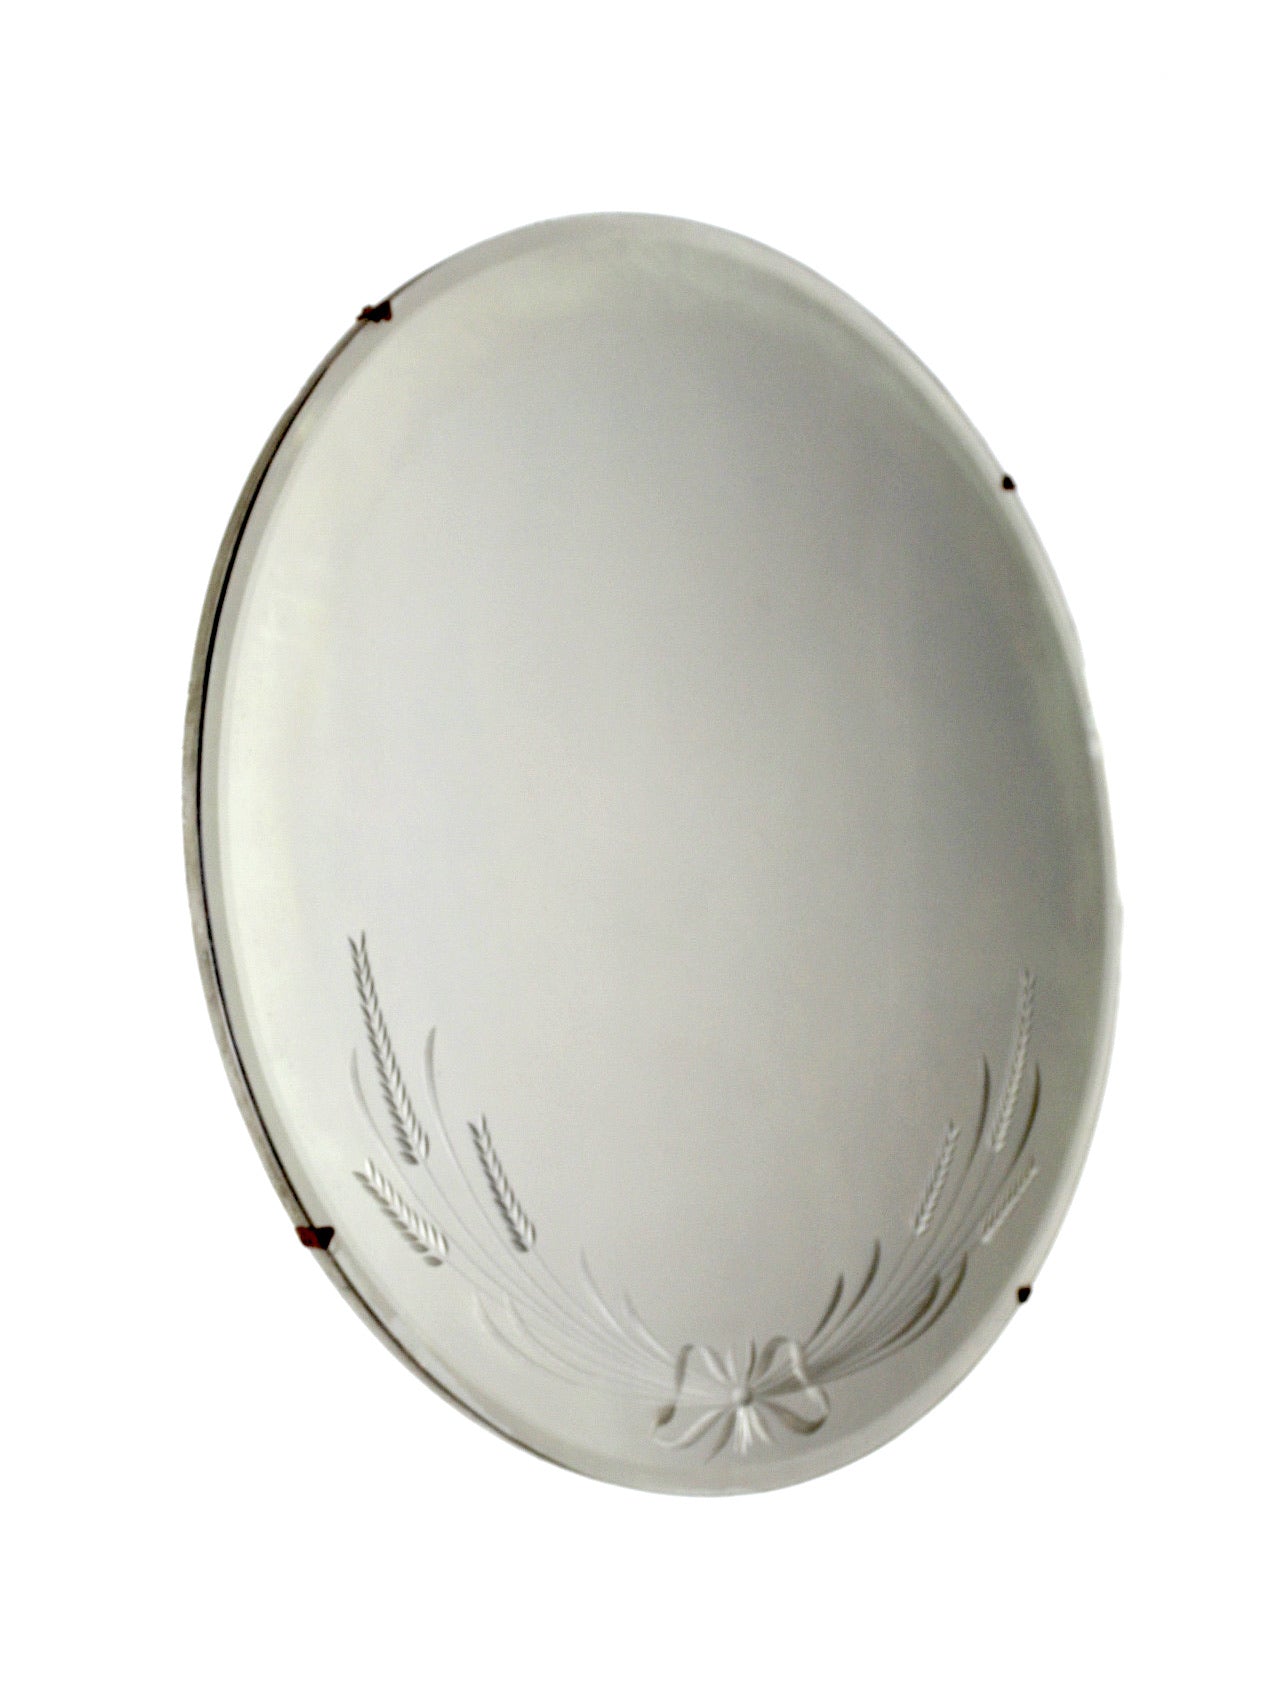 antique round etched mirror